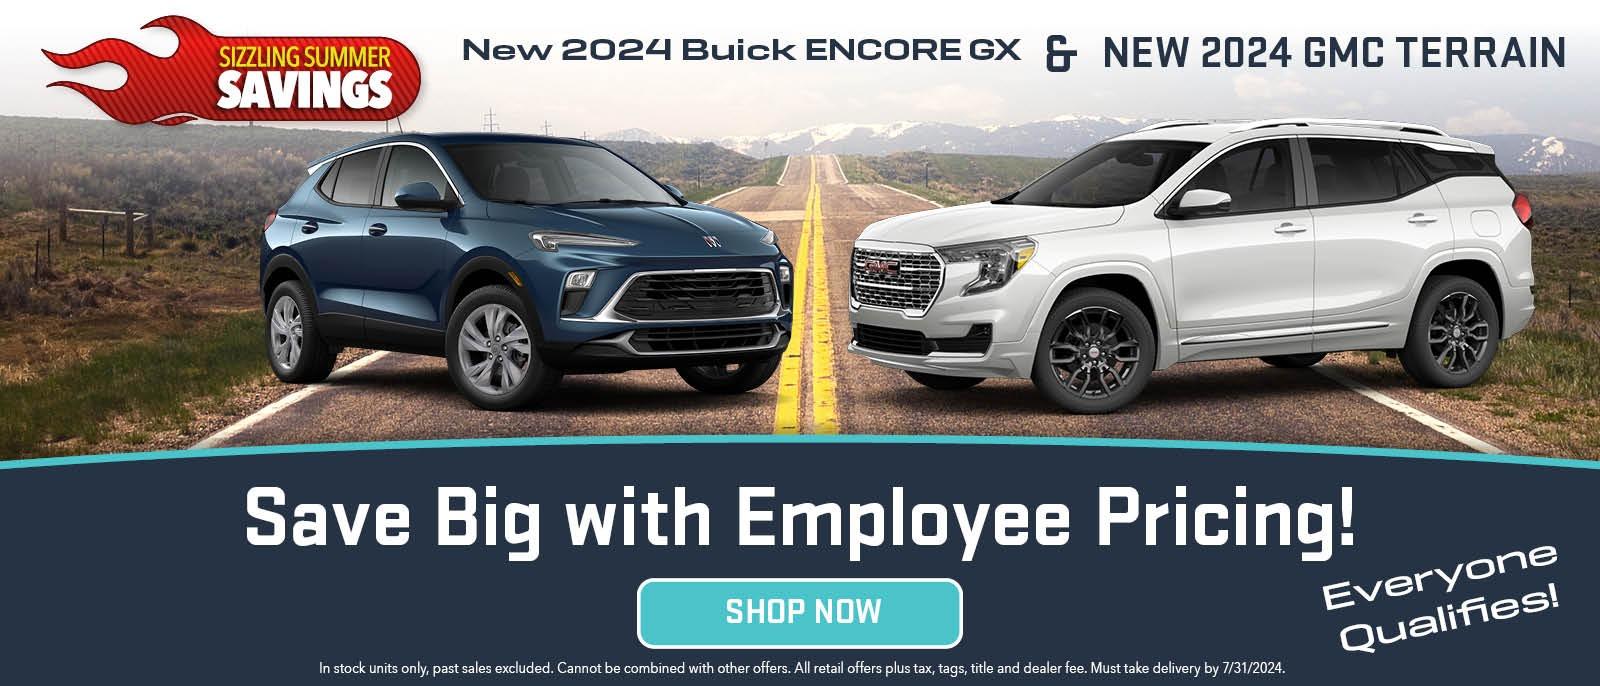 New 2024 GMC Terrain & Buick Encore GX Models